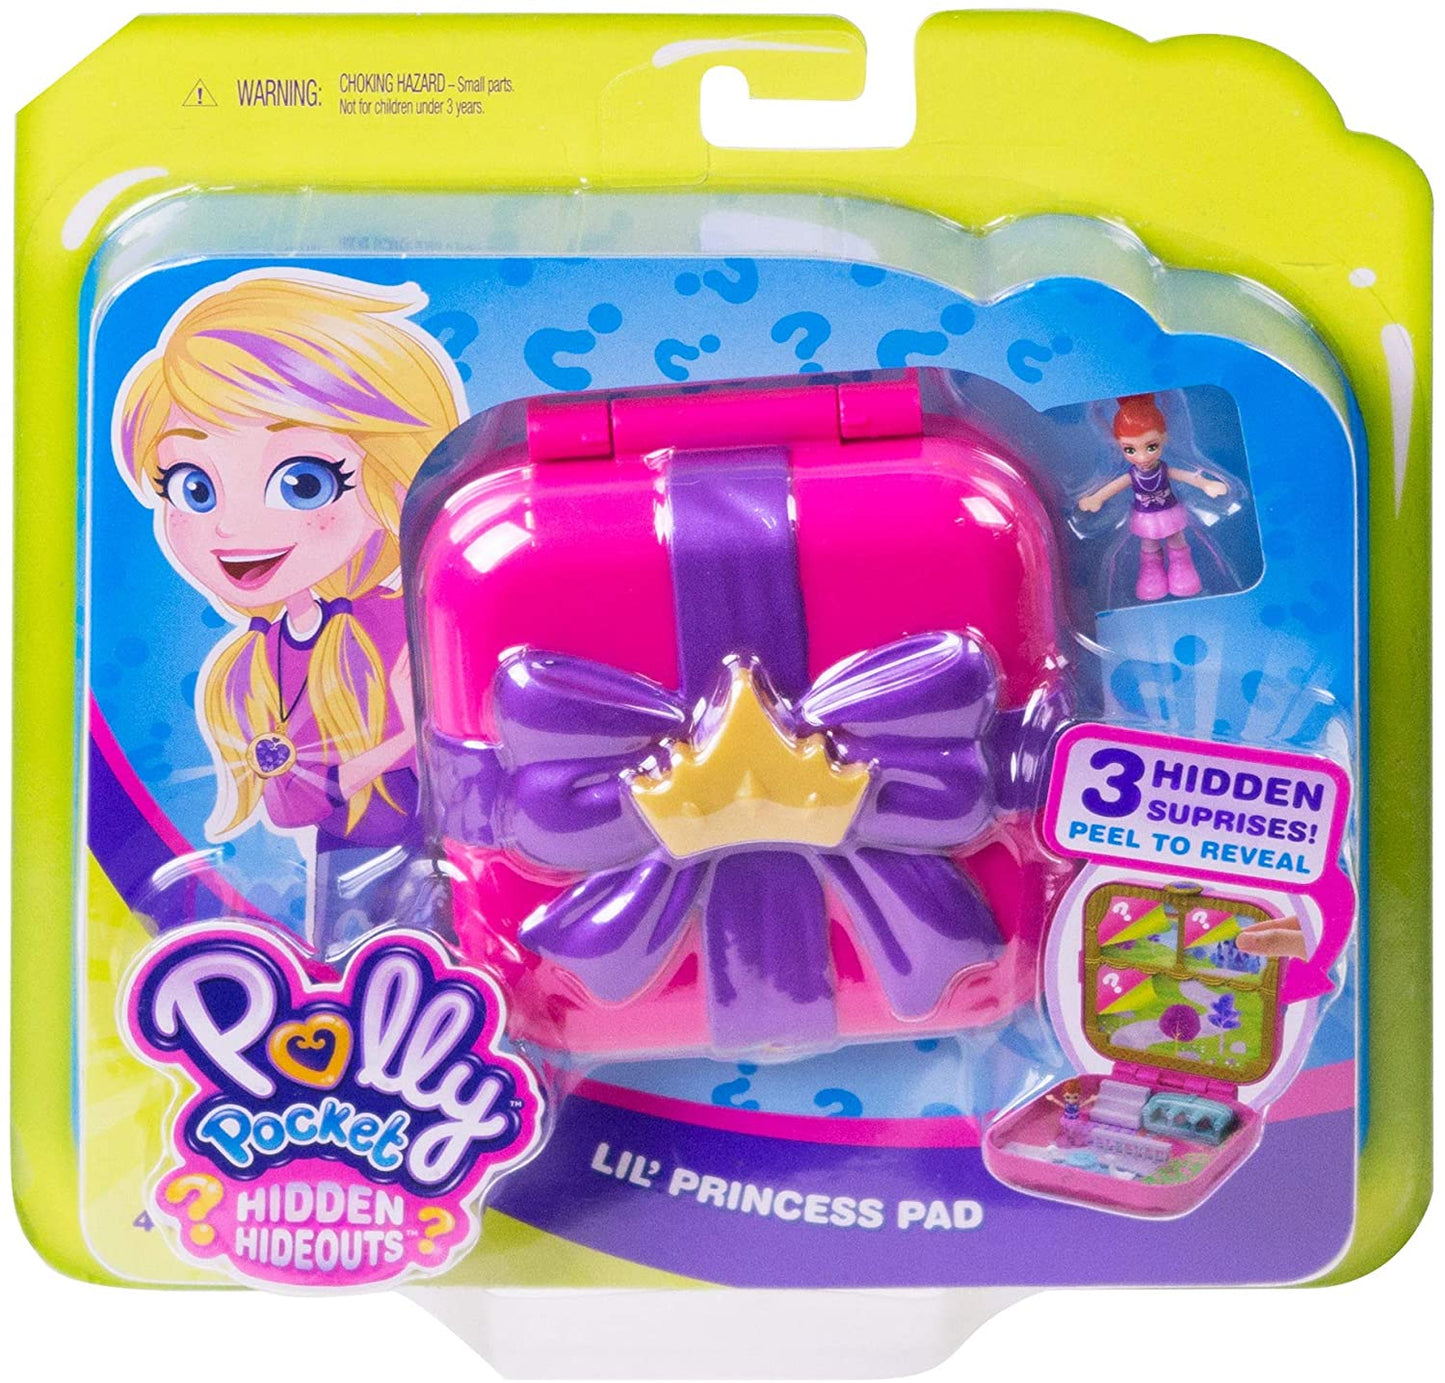 Polly Pocket GDK80 Esconderijos Escondidos Almofada de Princesinha com 3 frisos, 3 acessórios, 1 boneca Micro Lila e folha de adesivos